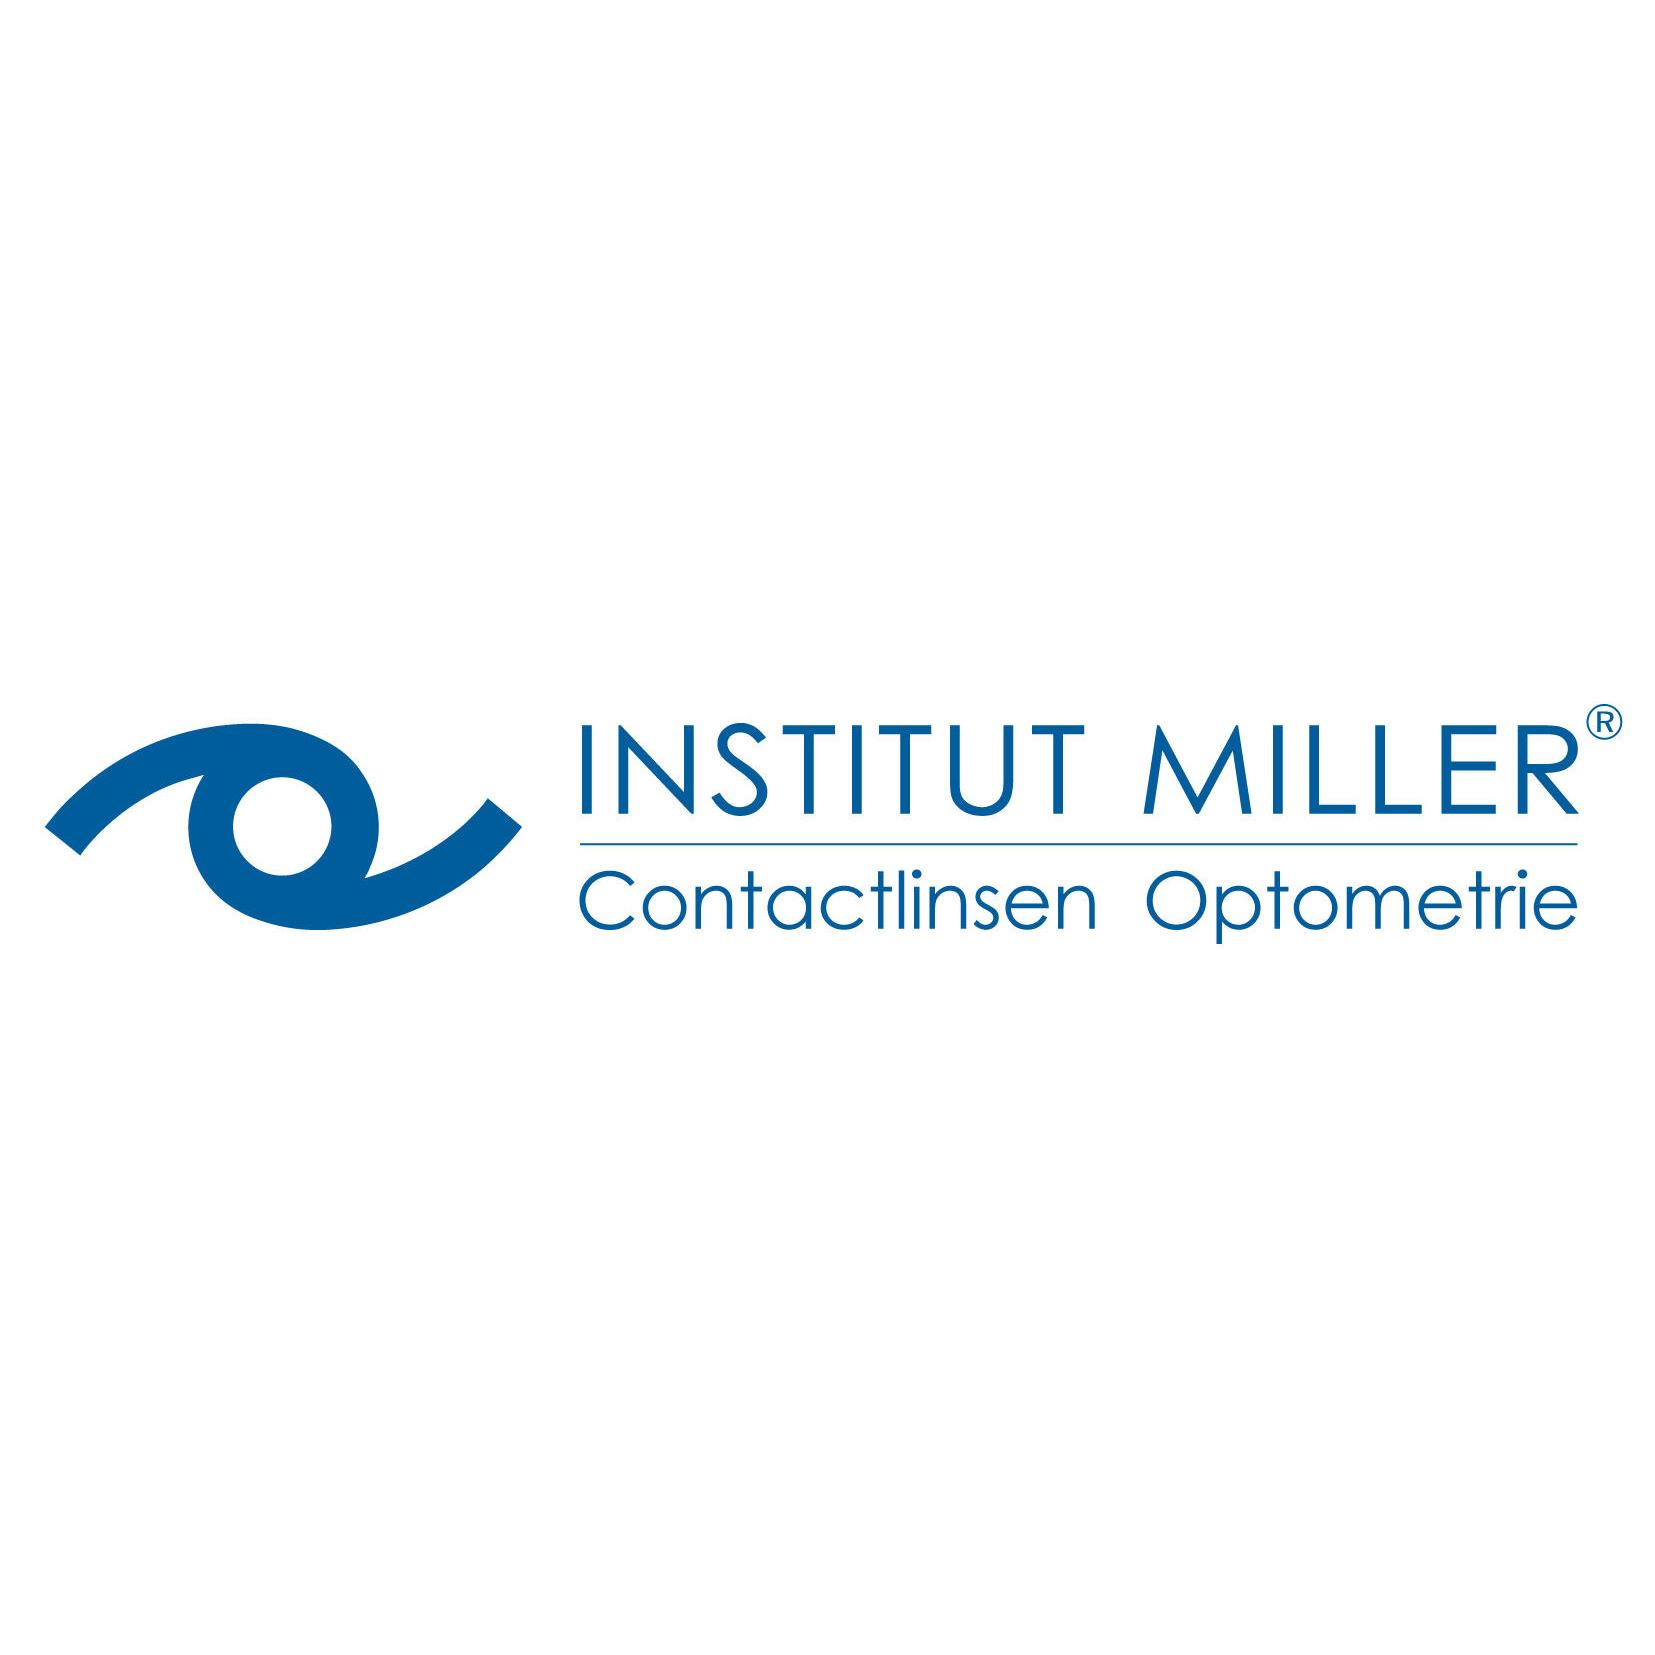 INSTITUT MILLER Contactlinsen Optometrie Logo